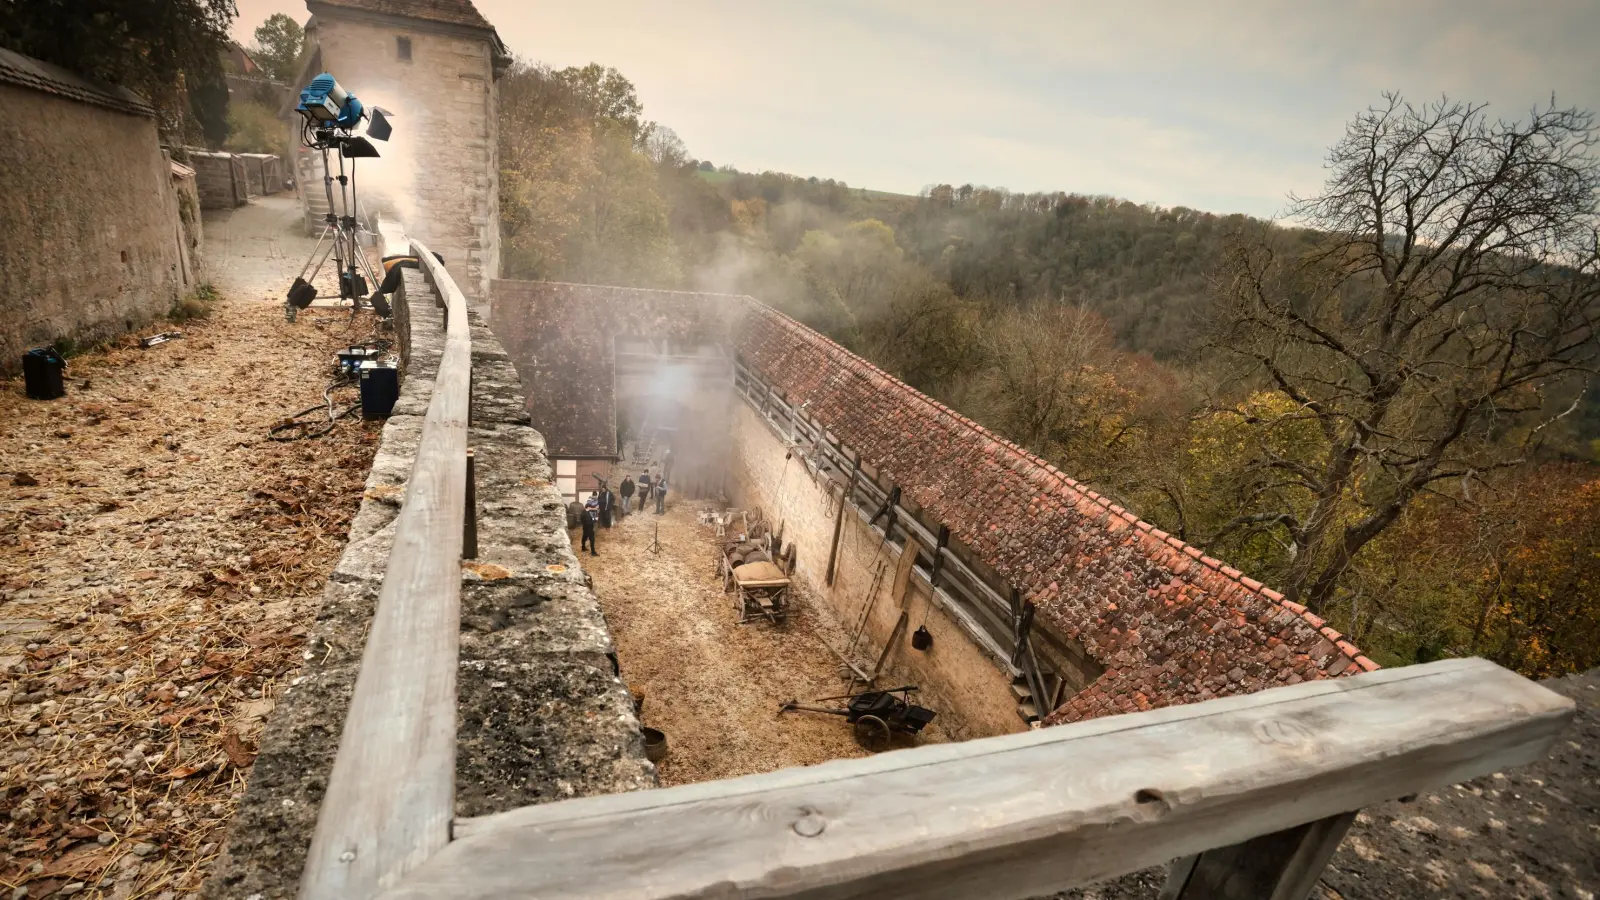 Gedreht wurde für die Serie „Kohlrabenschwarz“ unter anderem im Bereich des Kobolzeller Tors. Die Crew hatte im Innenhof der historischen Wehranlage eine Mittelalter-Szenerie aufgebaut. (Foto: Nico Krappweis)